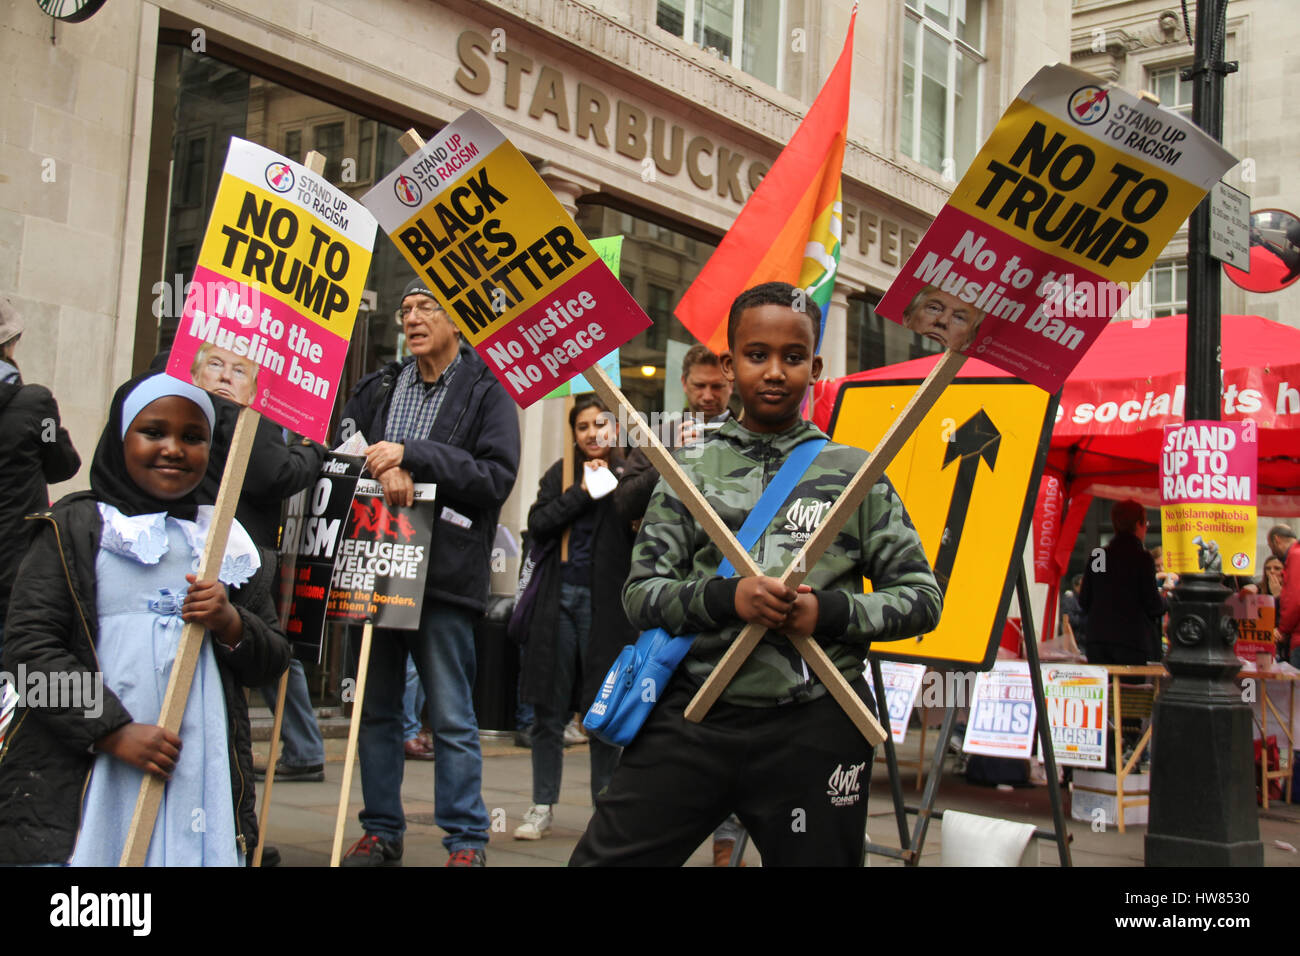 Londra, Regno Unito. Marzo 18, 2017: due giovani musulmani rappresentano per le foto con anti razzismo cartelloni durante la fase di stand fino al razzismo dimostrazione sulle Nazioni Unite Anti-Racism giorno per le strade di Londra il 18 marzo 2017. Il mese di marzo ha cominciato a Portland Place (BBC) e si è conclusa a Piazza del Parlamento, dove un rally è pianificato. L'ONU Anti-Racism Day è una giornata di azione globale contro il razzismo in tutte le sue forme. © David Mbiyu/Alamy Live News Foto Stock